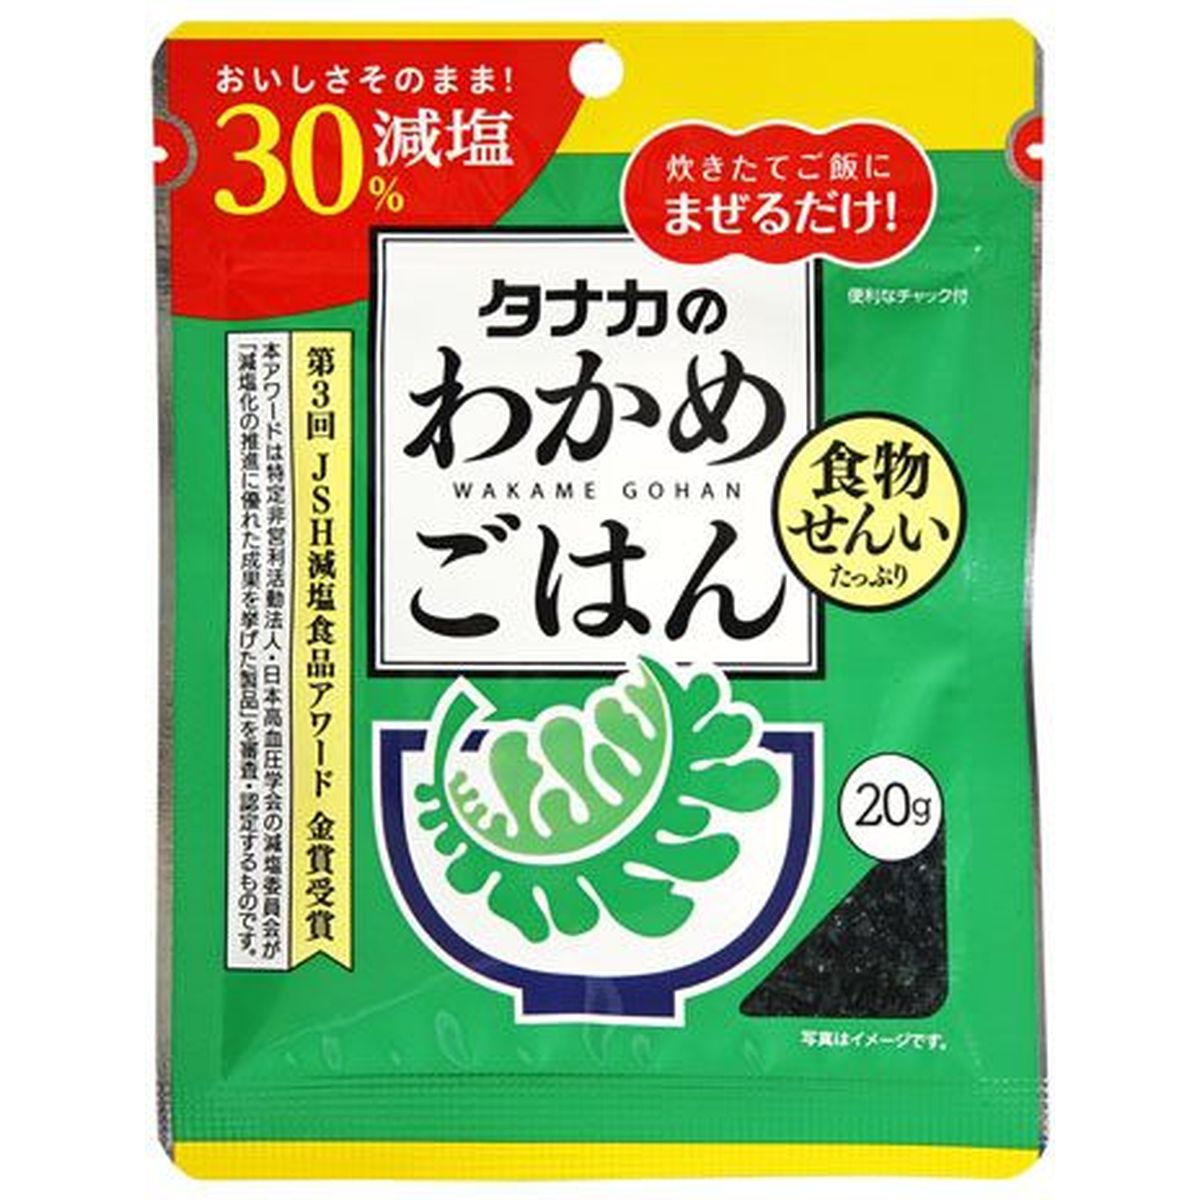 【80個入リ】田中食品 減塩ワカメゴハン 20g